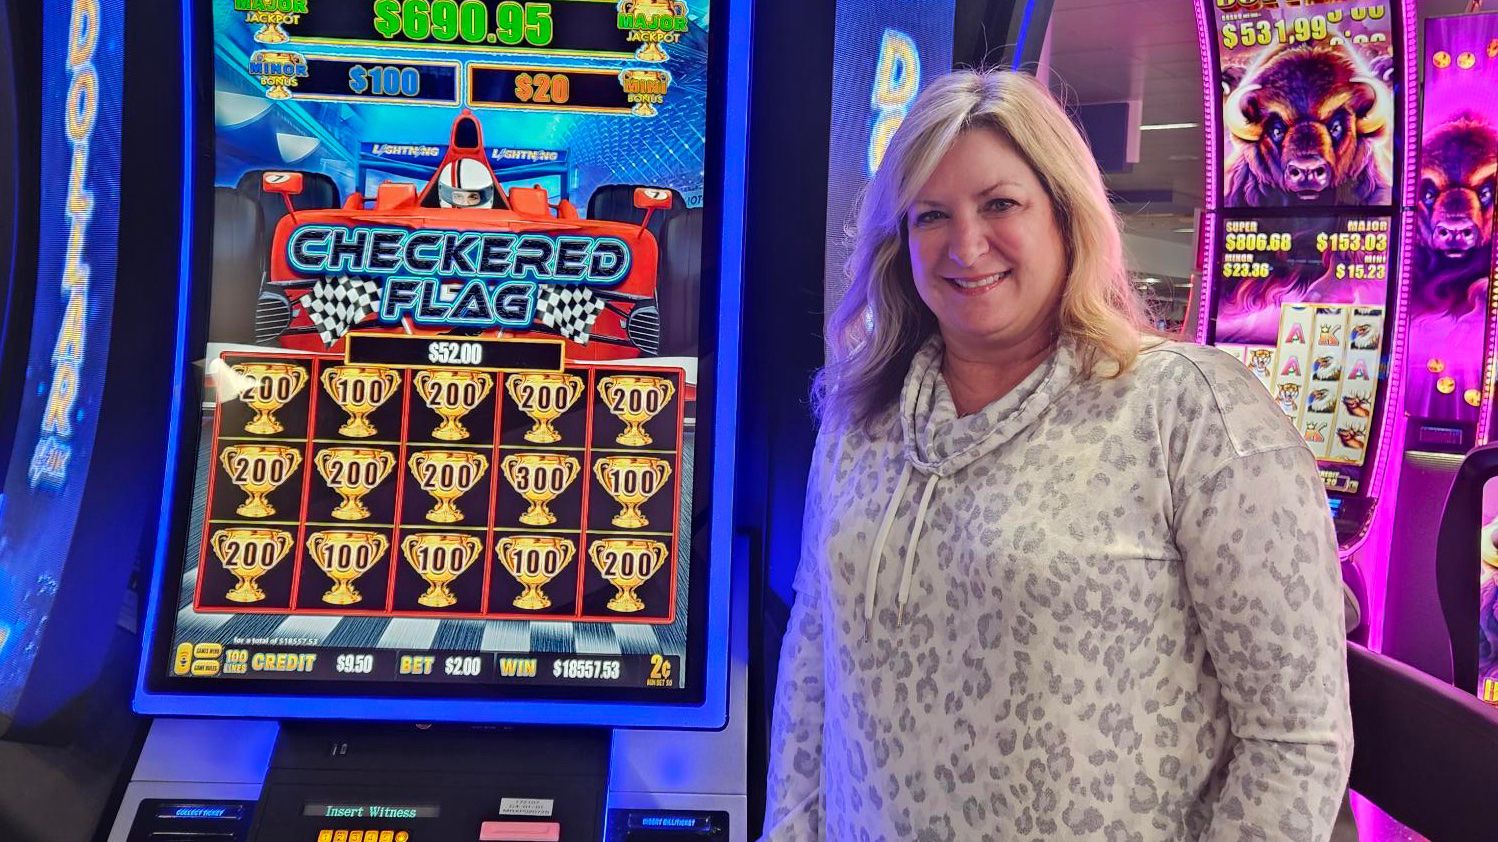 Сколько туристы в аэропорту Лас-Вегаса выиграли в игровые автоматы